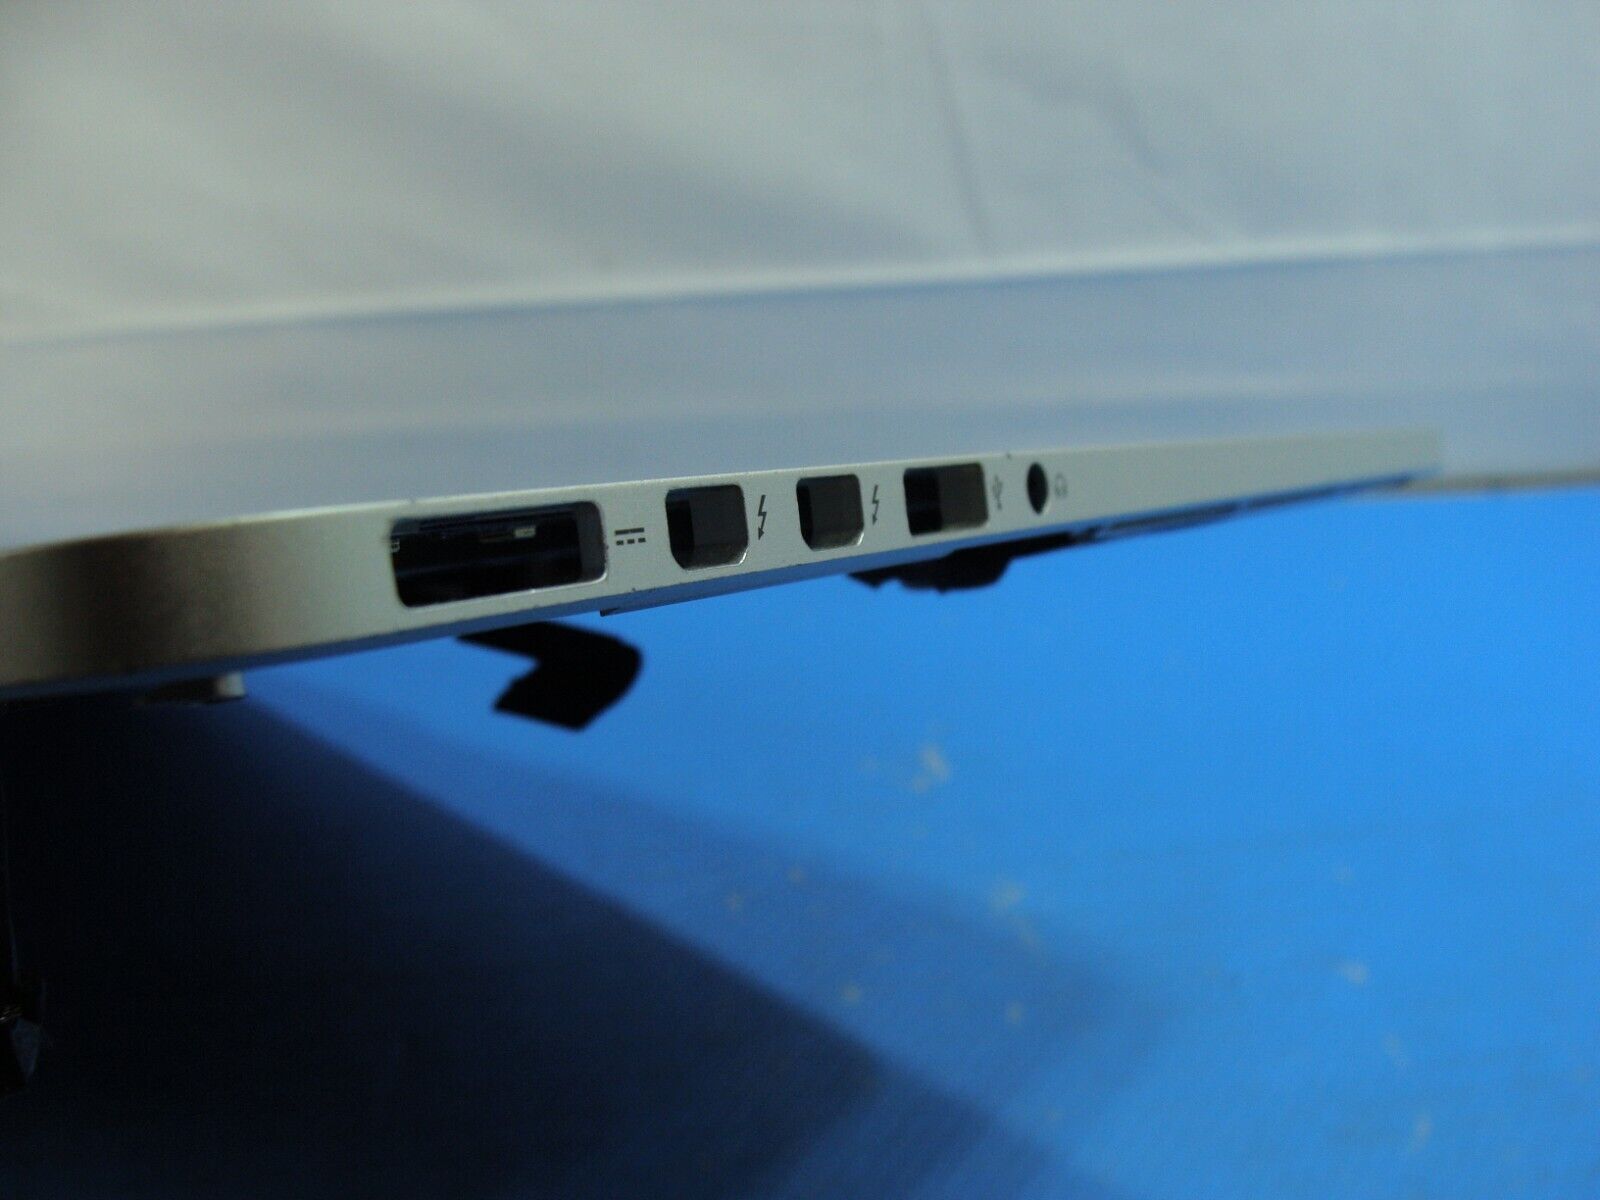 MacBook Pro 15 A1398 Mid 2014 MGXA2LL/A Top Case w/Keyboard & Battery 661-8311